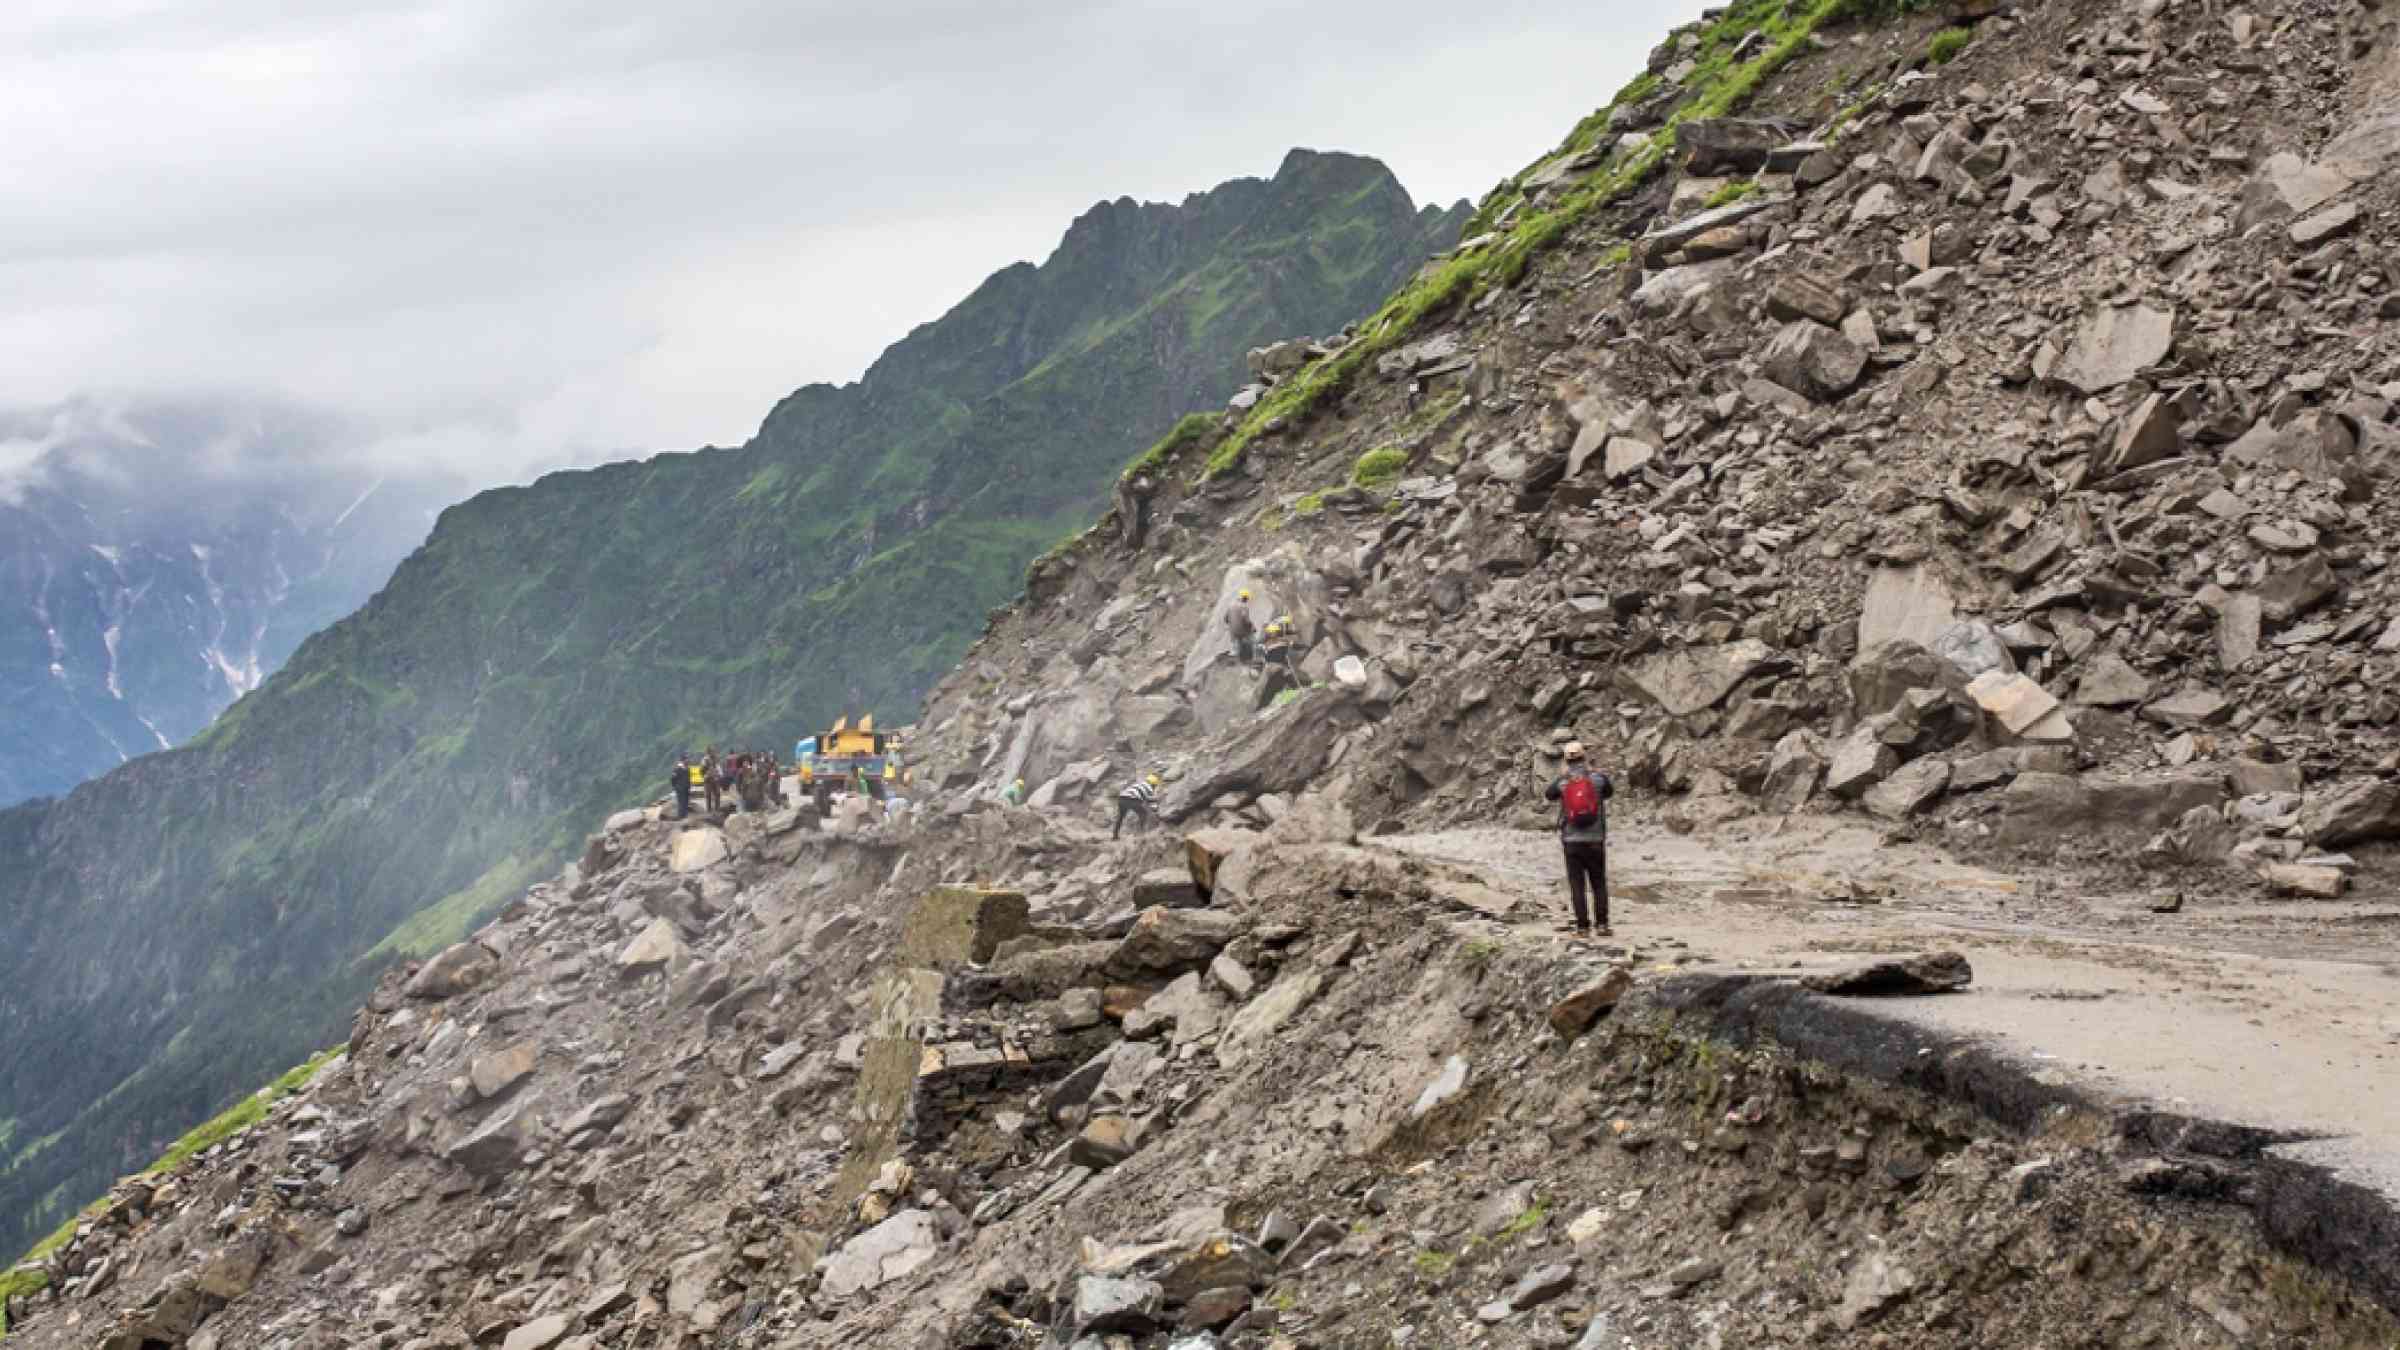 Landslide on the Manali 